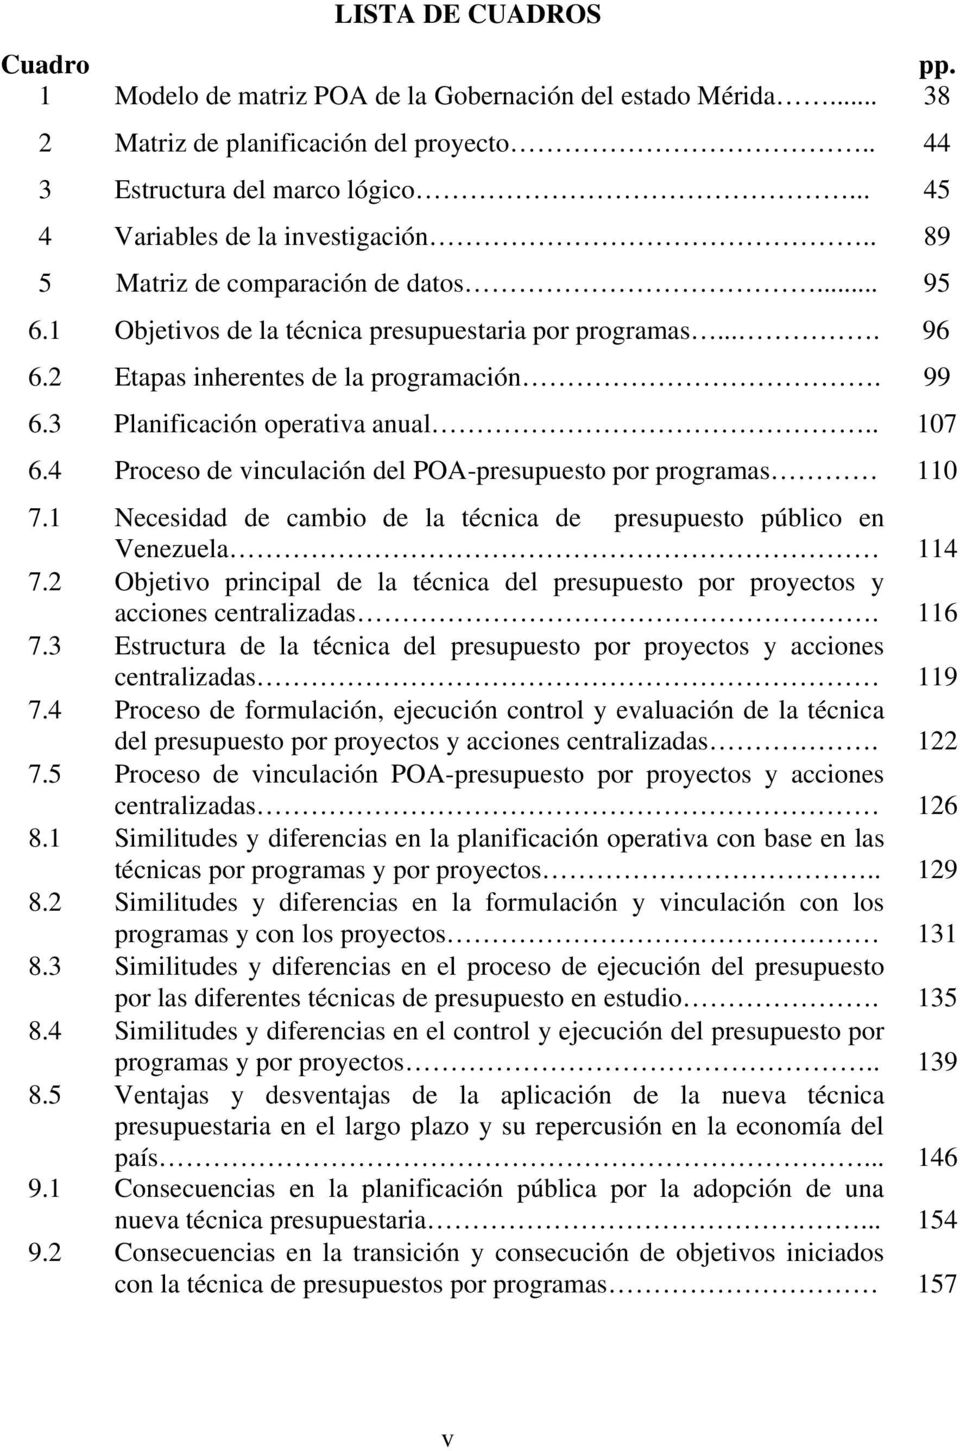 3 Planificación operativa anual.. 107 6.4 Proceso de vinculación del POA-presupuesto por programas 110 7.1 Necesidad de cambio de la técnica de presupuesto público en Venezuela 114 7.